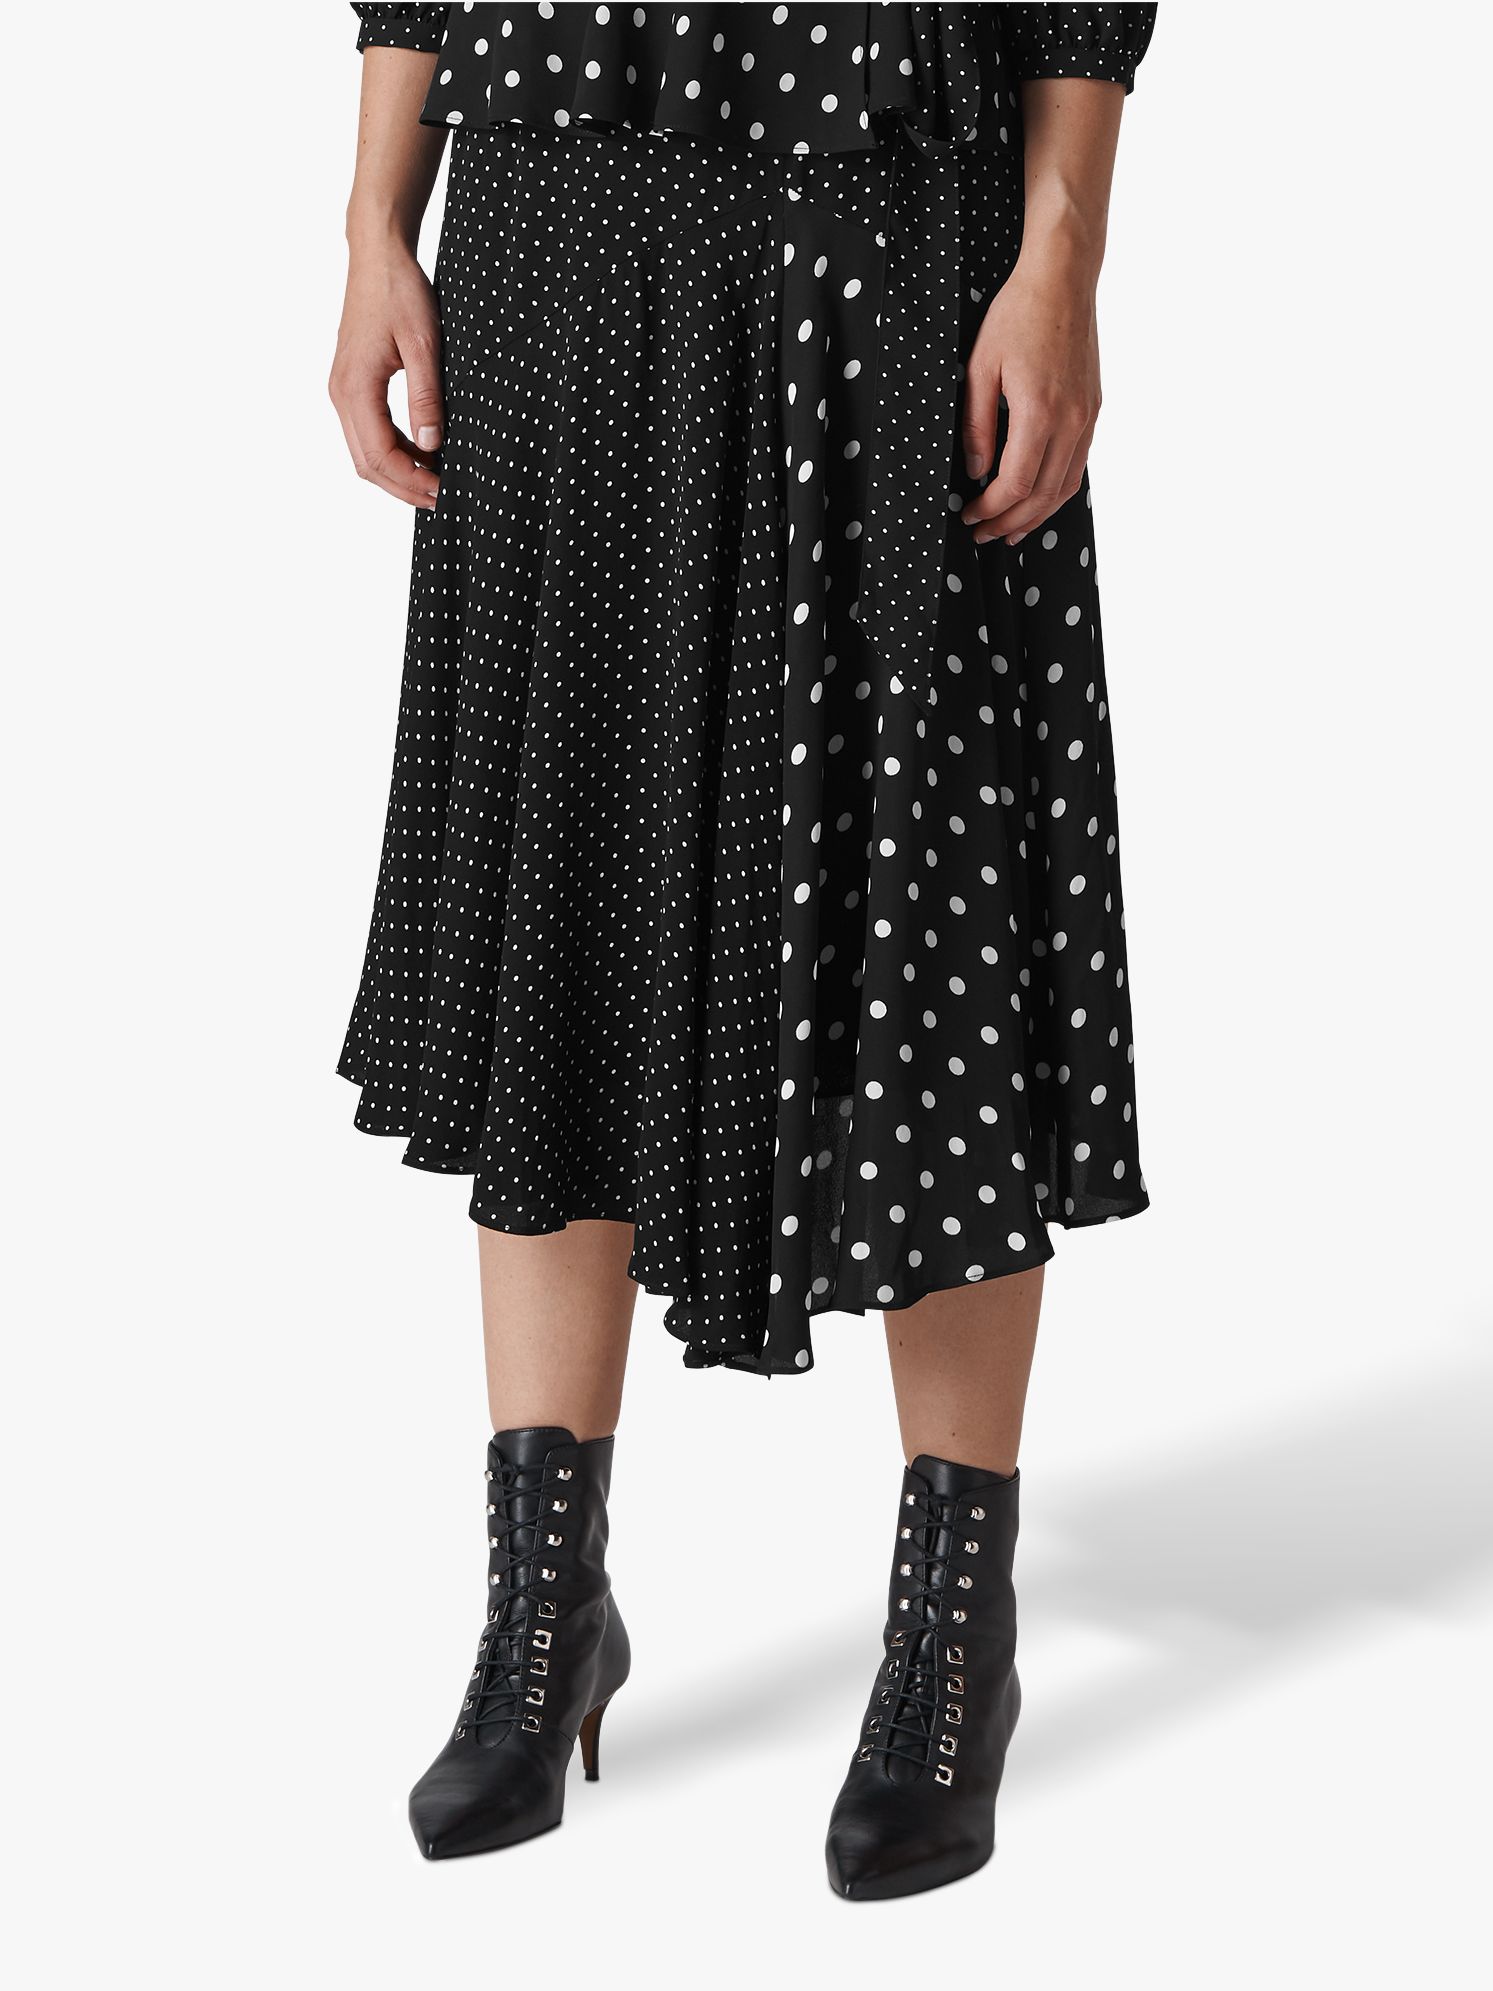 Whistles Spot Print Asymmetric Skirt, Black/White